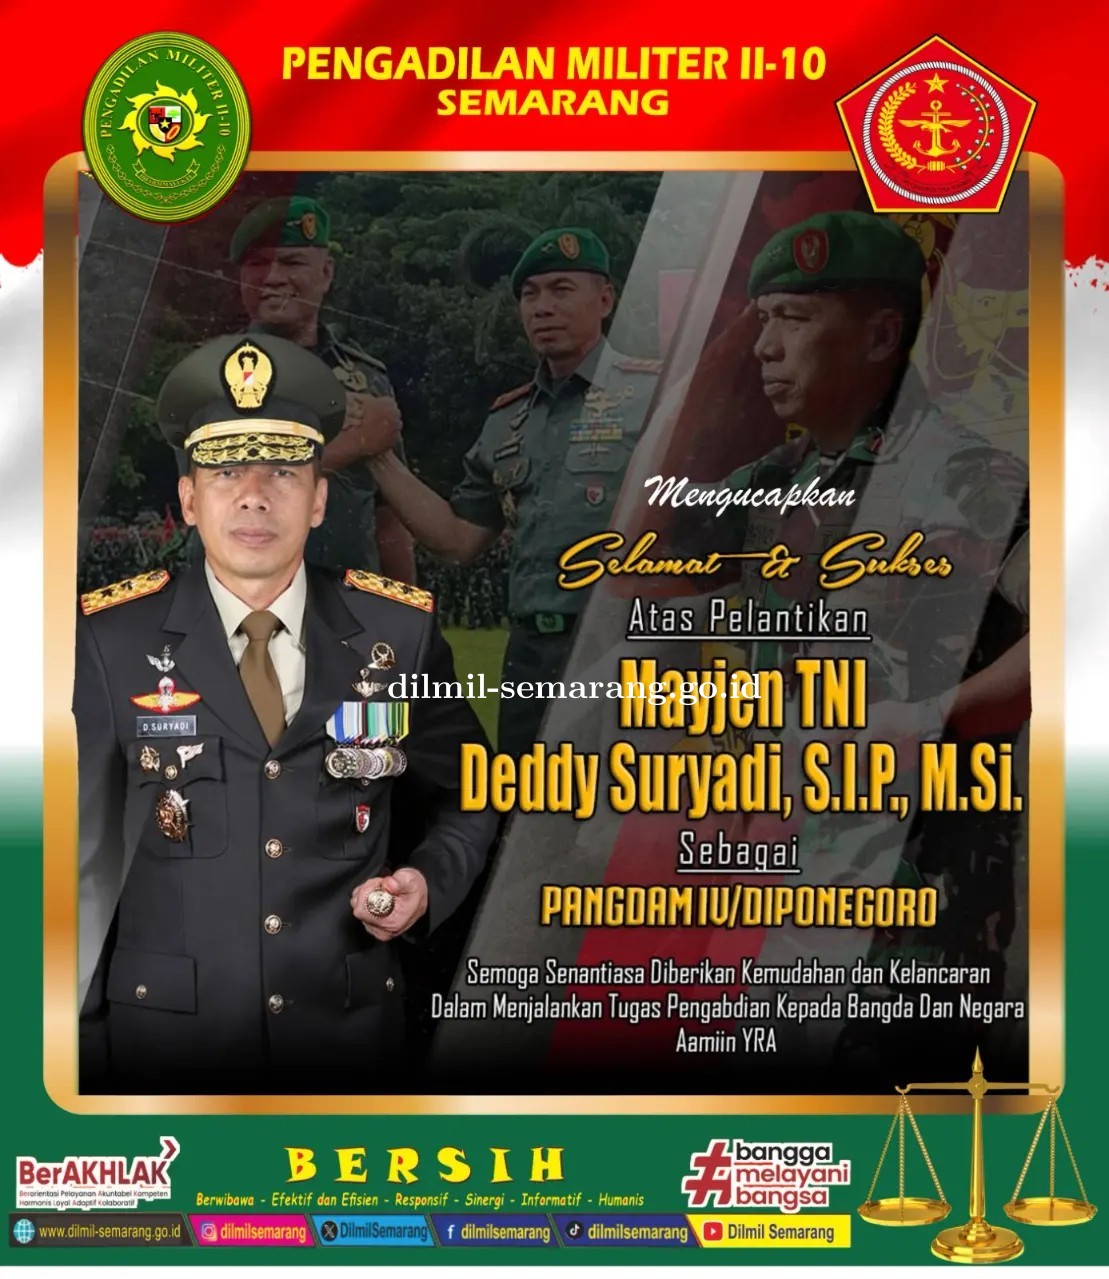 Selamat dan Sukses atas pelantikan Mayjen TNI Deddy Suryadi, S.IP., M.Si.